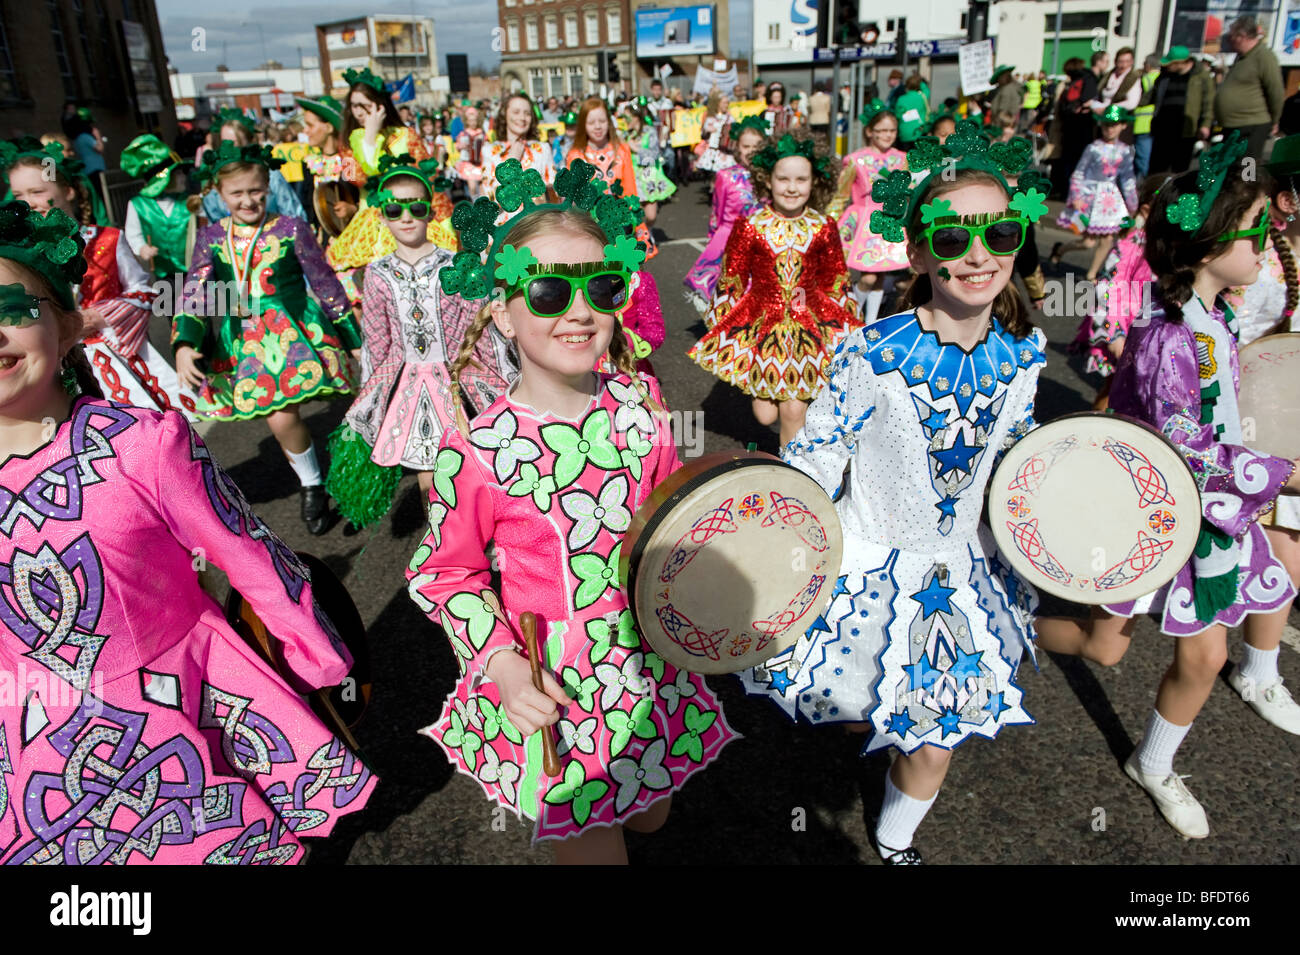 Les danseurs irlandais lors de la Parade de la St Patrick à Digbeth Birmingham, Angleterre, RU Banque D'Images